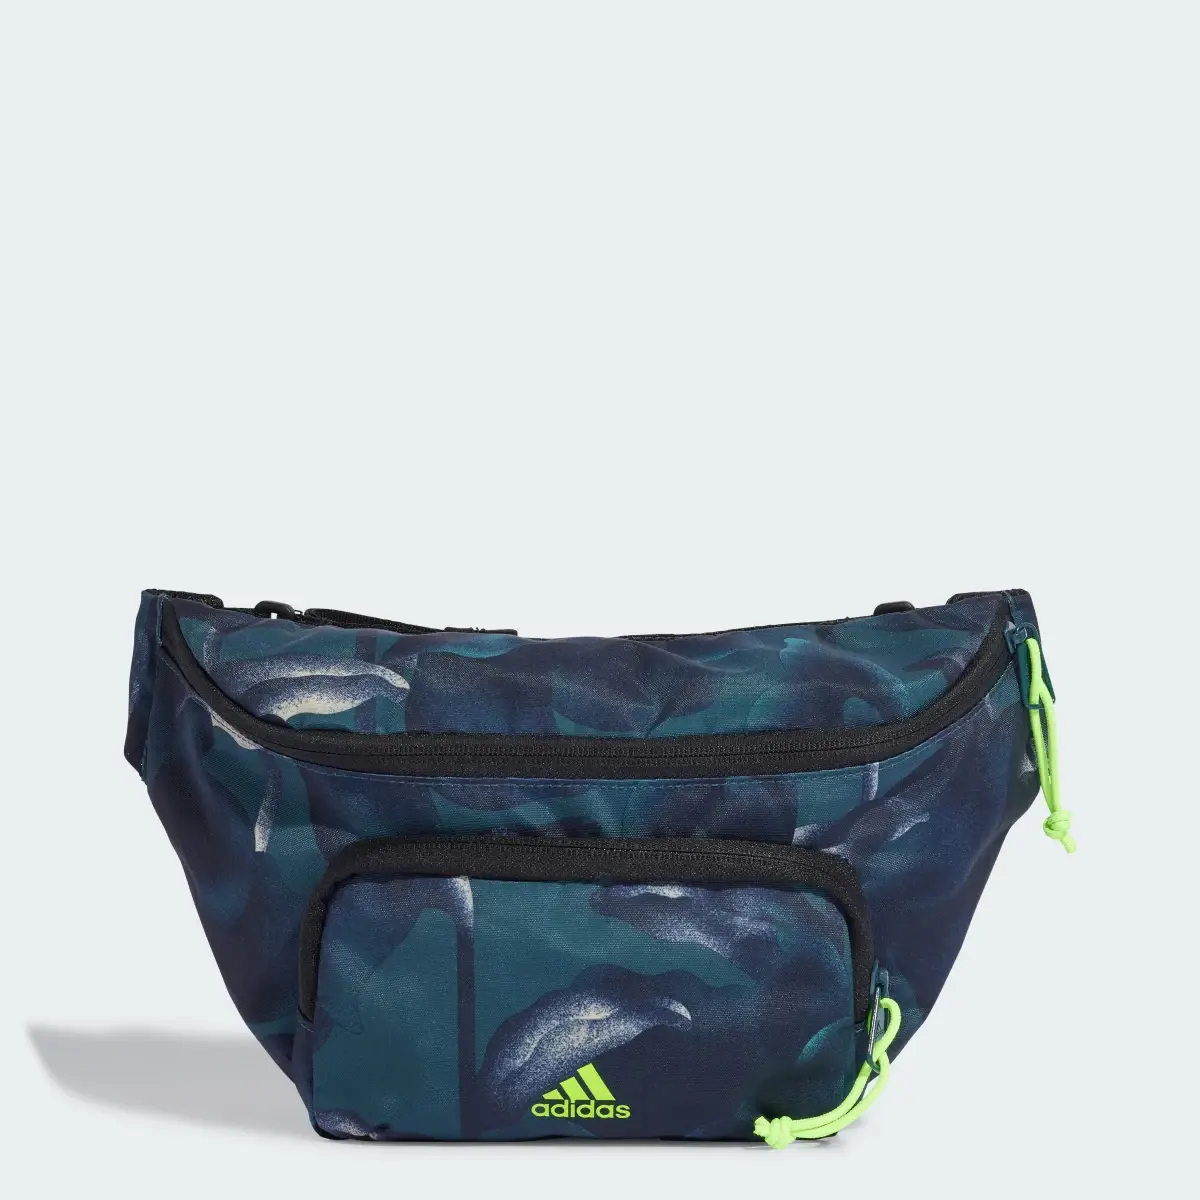 Adidas City Explorer Waist Bag. 1